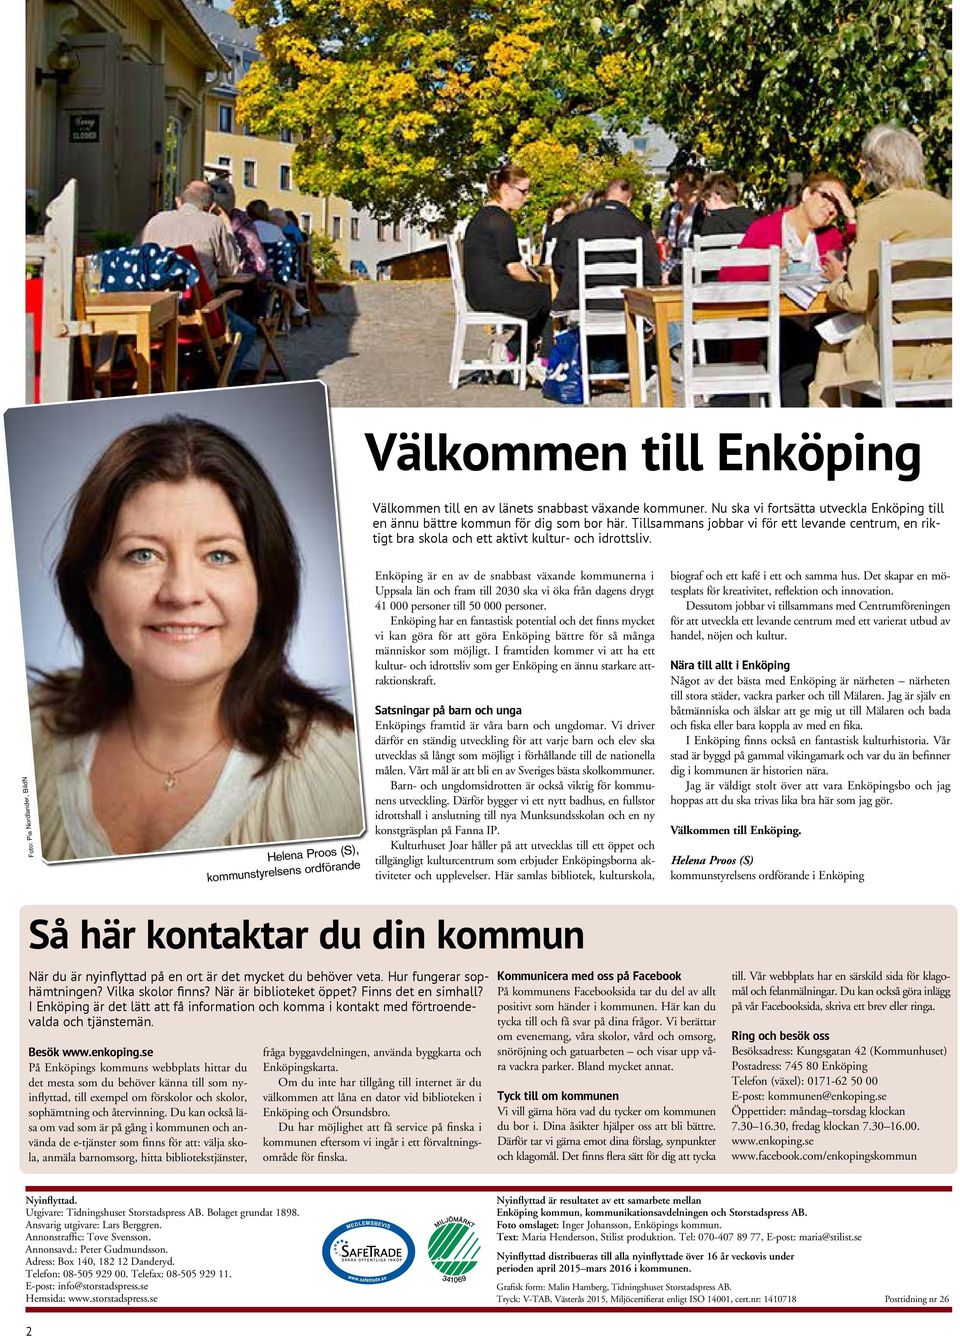 Foto: Pia Nordlander, BildN Helena Proos (S), kommunstyrelsens ordförande Enköping är en av de snabbast växande kommunerna i Uppsala län och fram till 2030 ska vi öka från dagens drygt 41 000